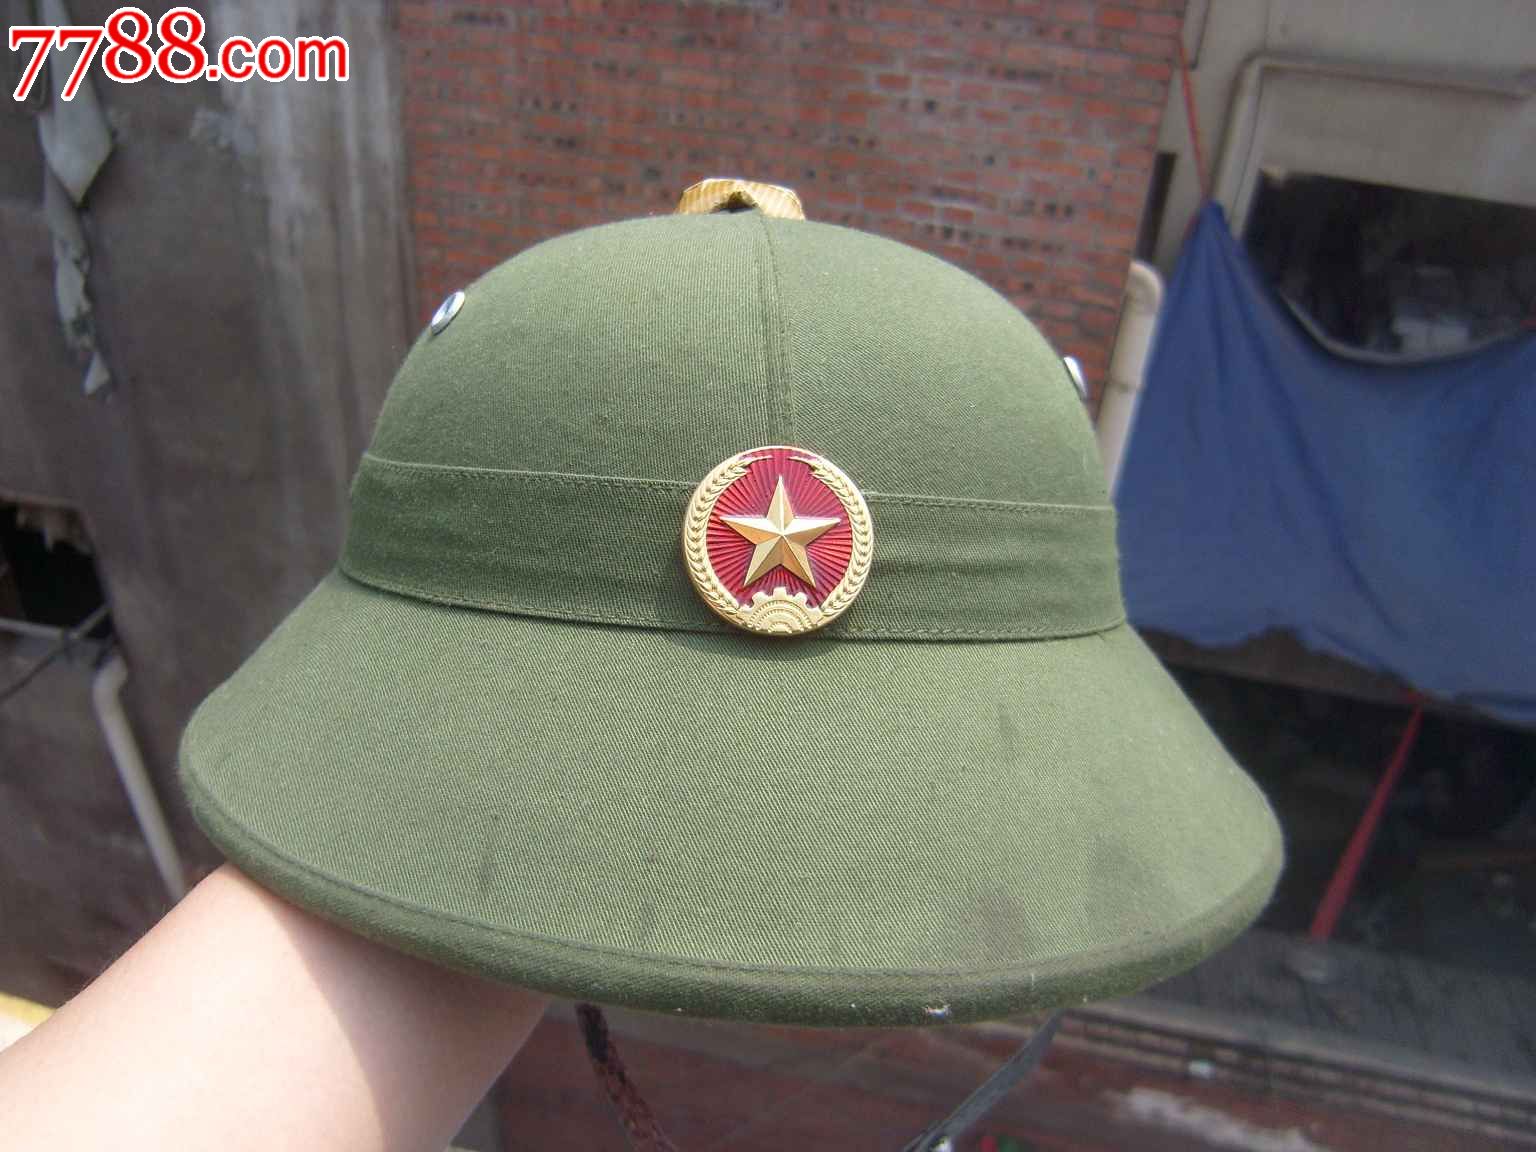 越南a2式头盔图片